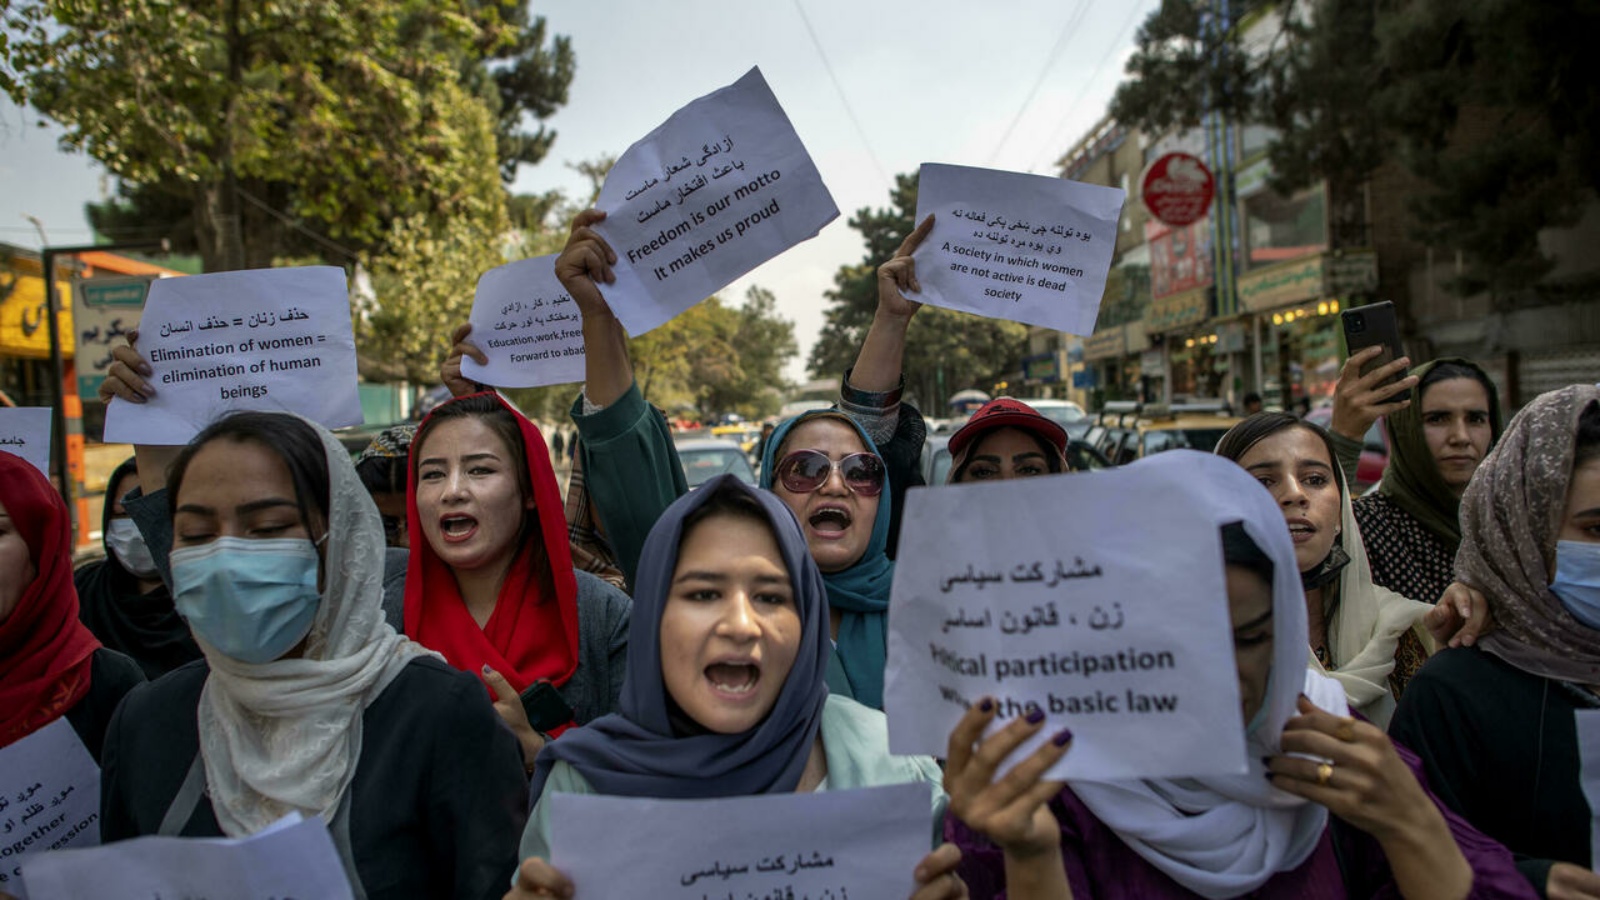 حوالى 12 امرأة أفغانية قمنَ باحتجاج لفترة وجيزة أمام وزارة شؤون المرأة القديمة، والتي تم استبدالها الآن بإدارة اكتسبت سمعة سيئة لتطبيقها عقيدة إسلامية صارمة. في 26 أيلول/ سبتمبر 2021.